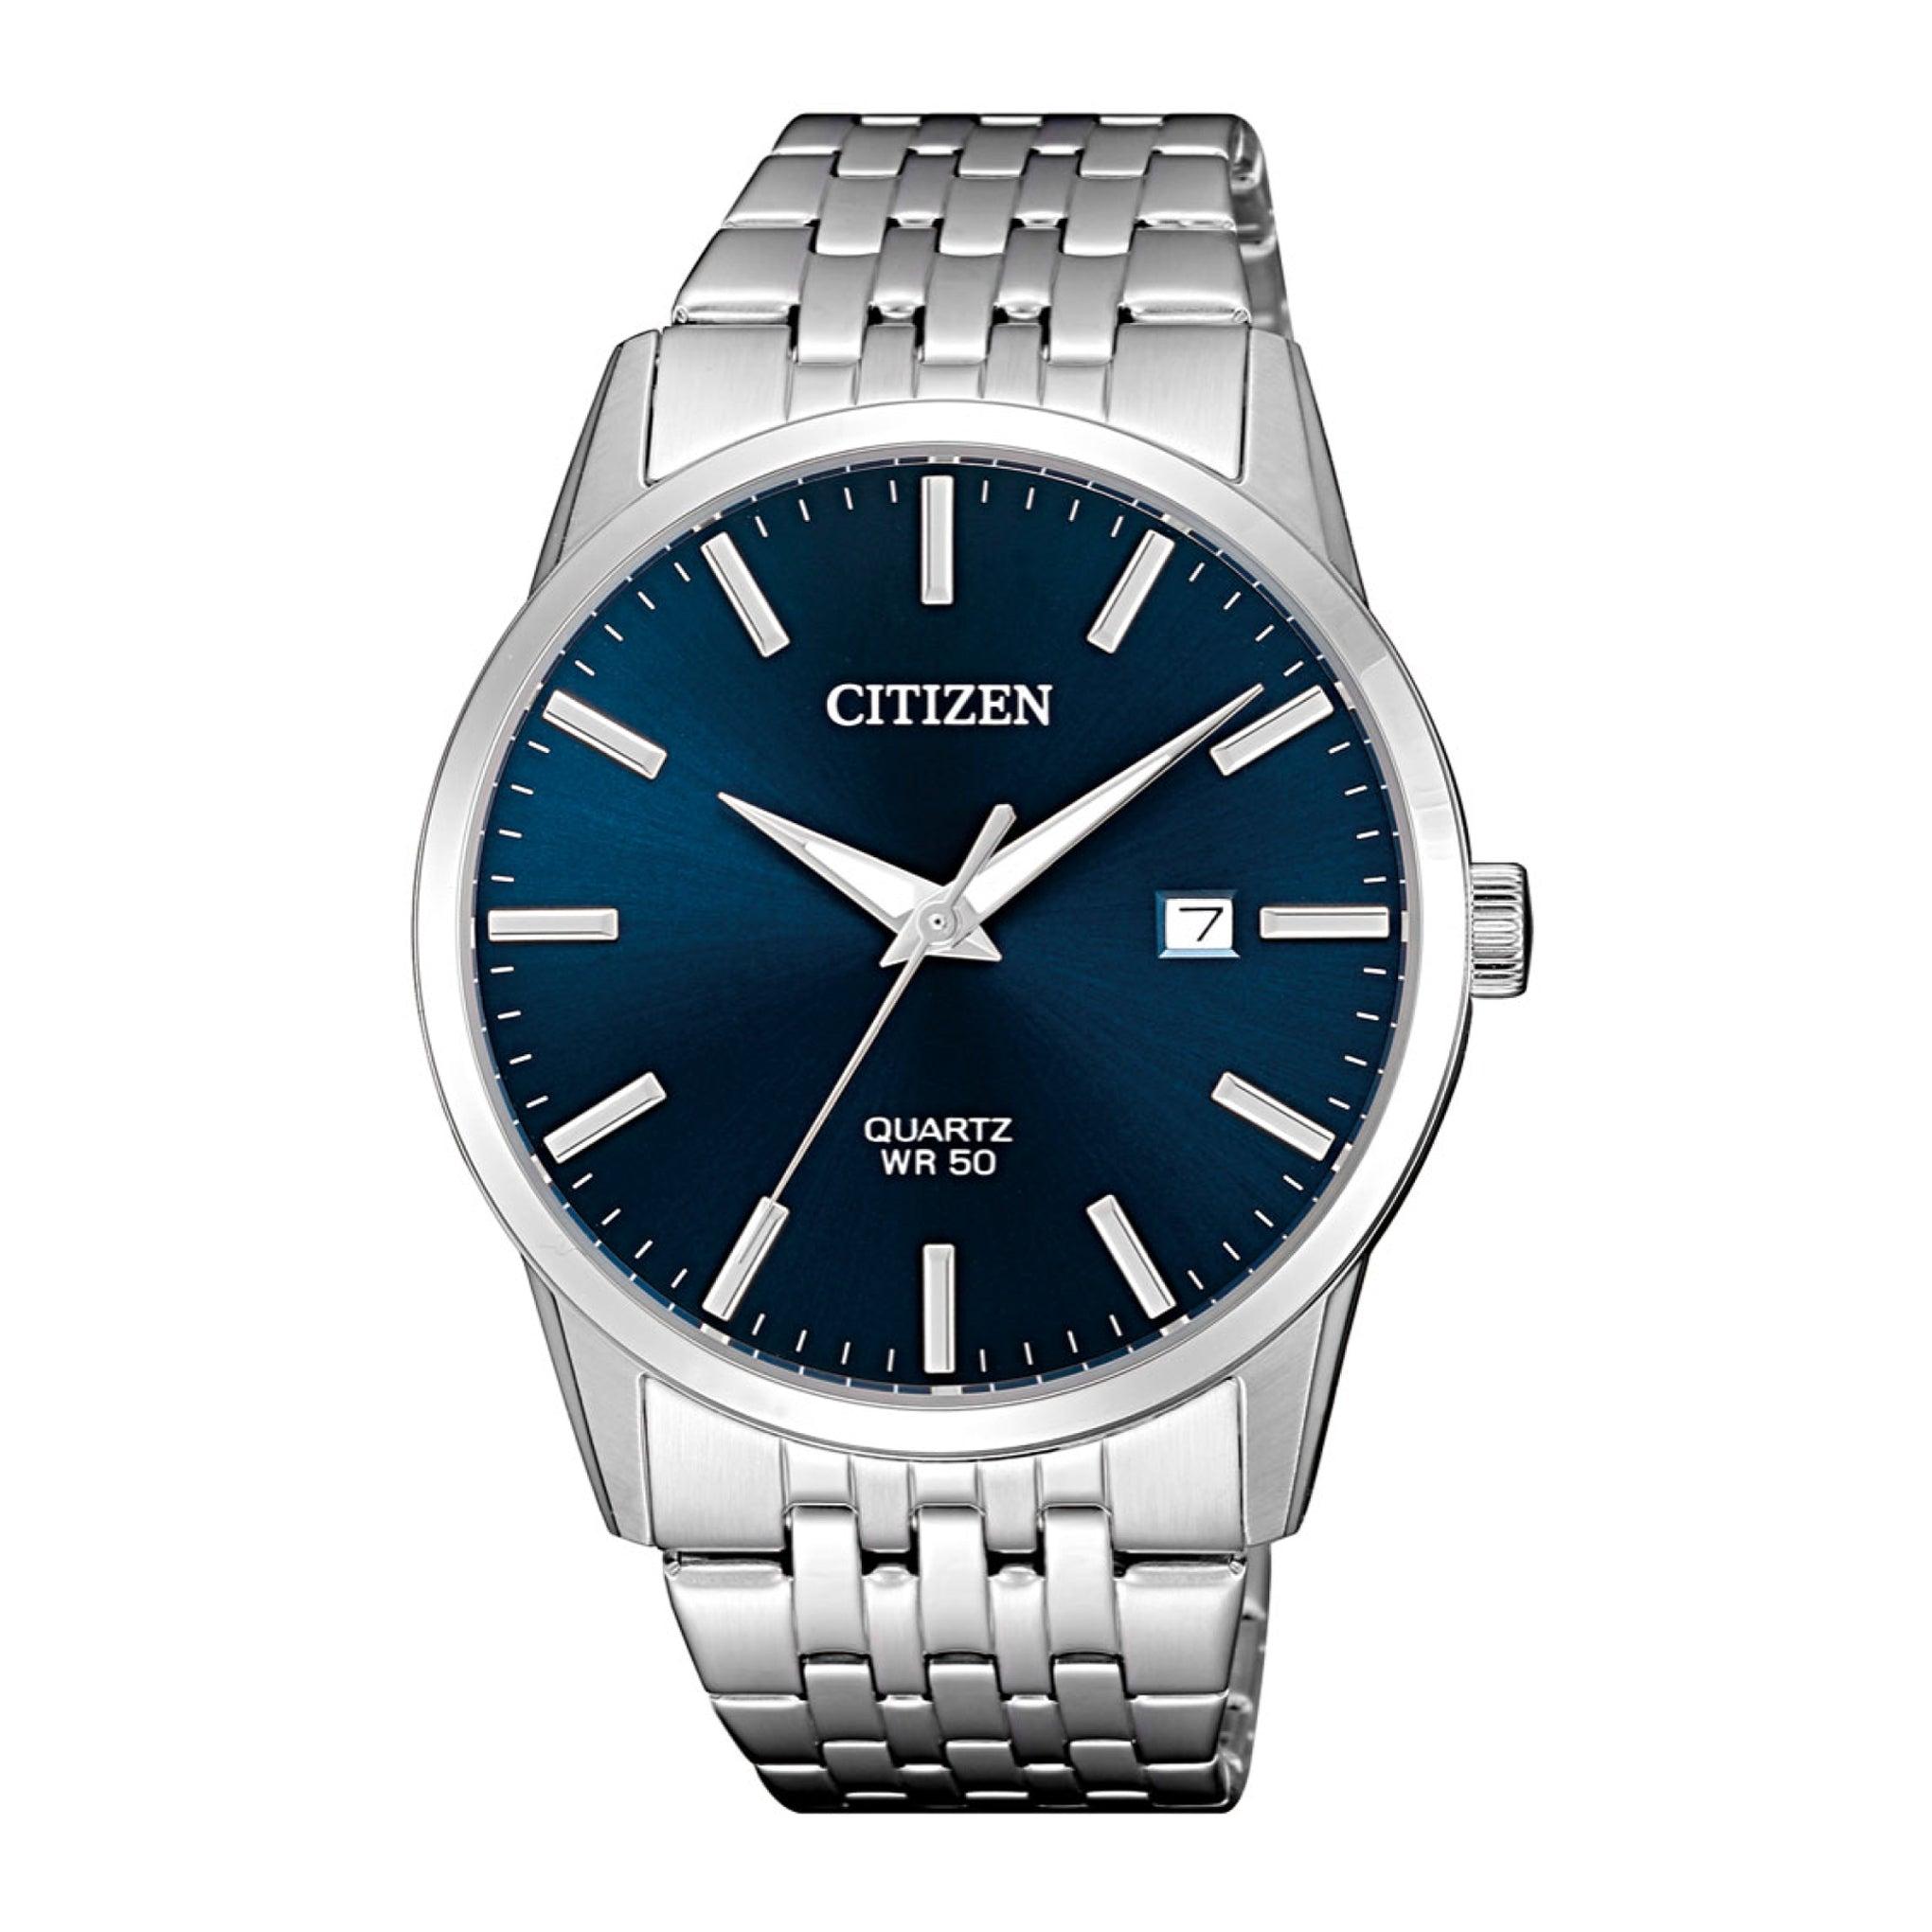 ساعة للرجال ستانلس ستيل فضي ازرق سيتزن Citizen Men's Analog Quartz Royal Blue Dial Stainless Steel Watch Bi5000-87l